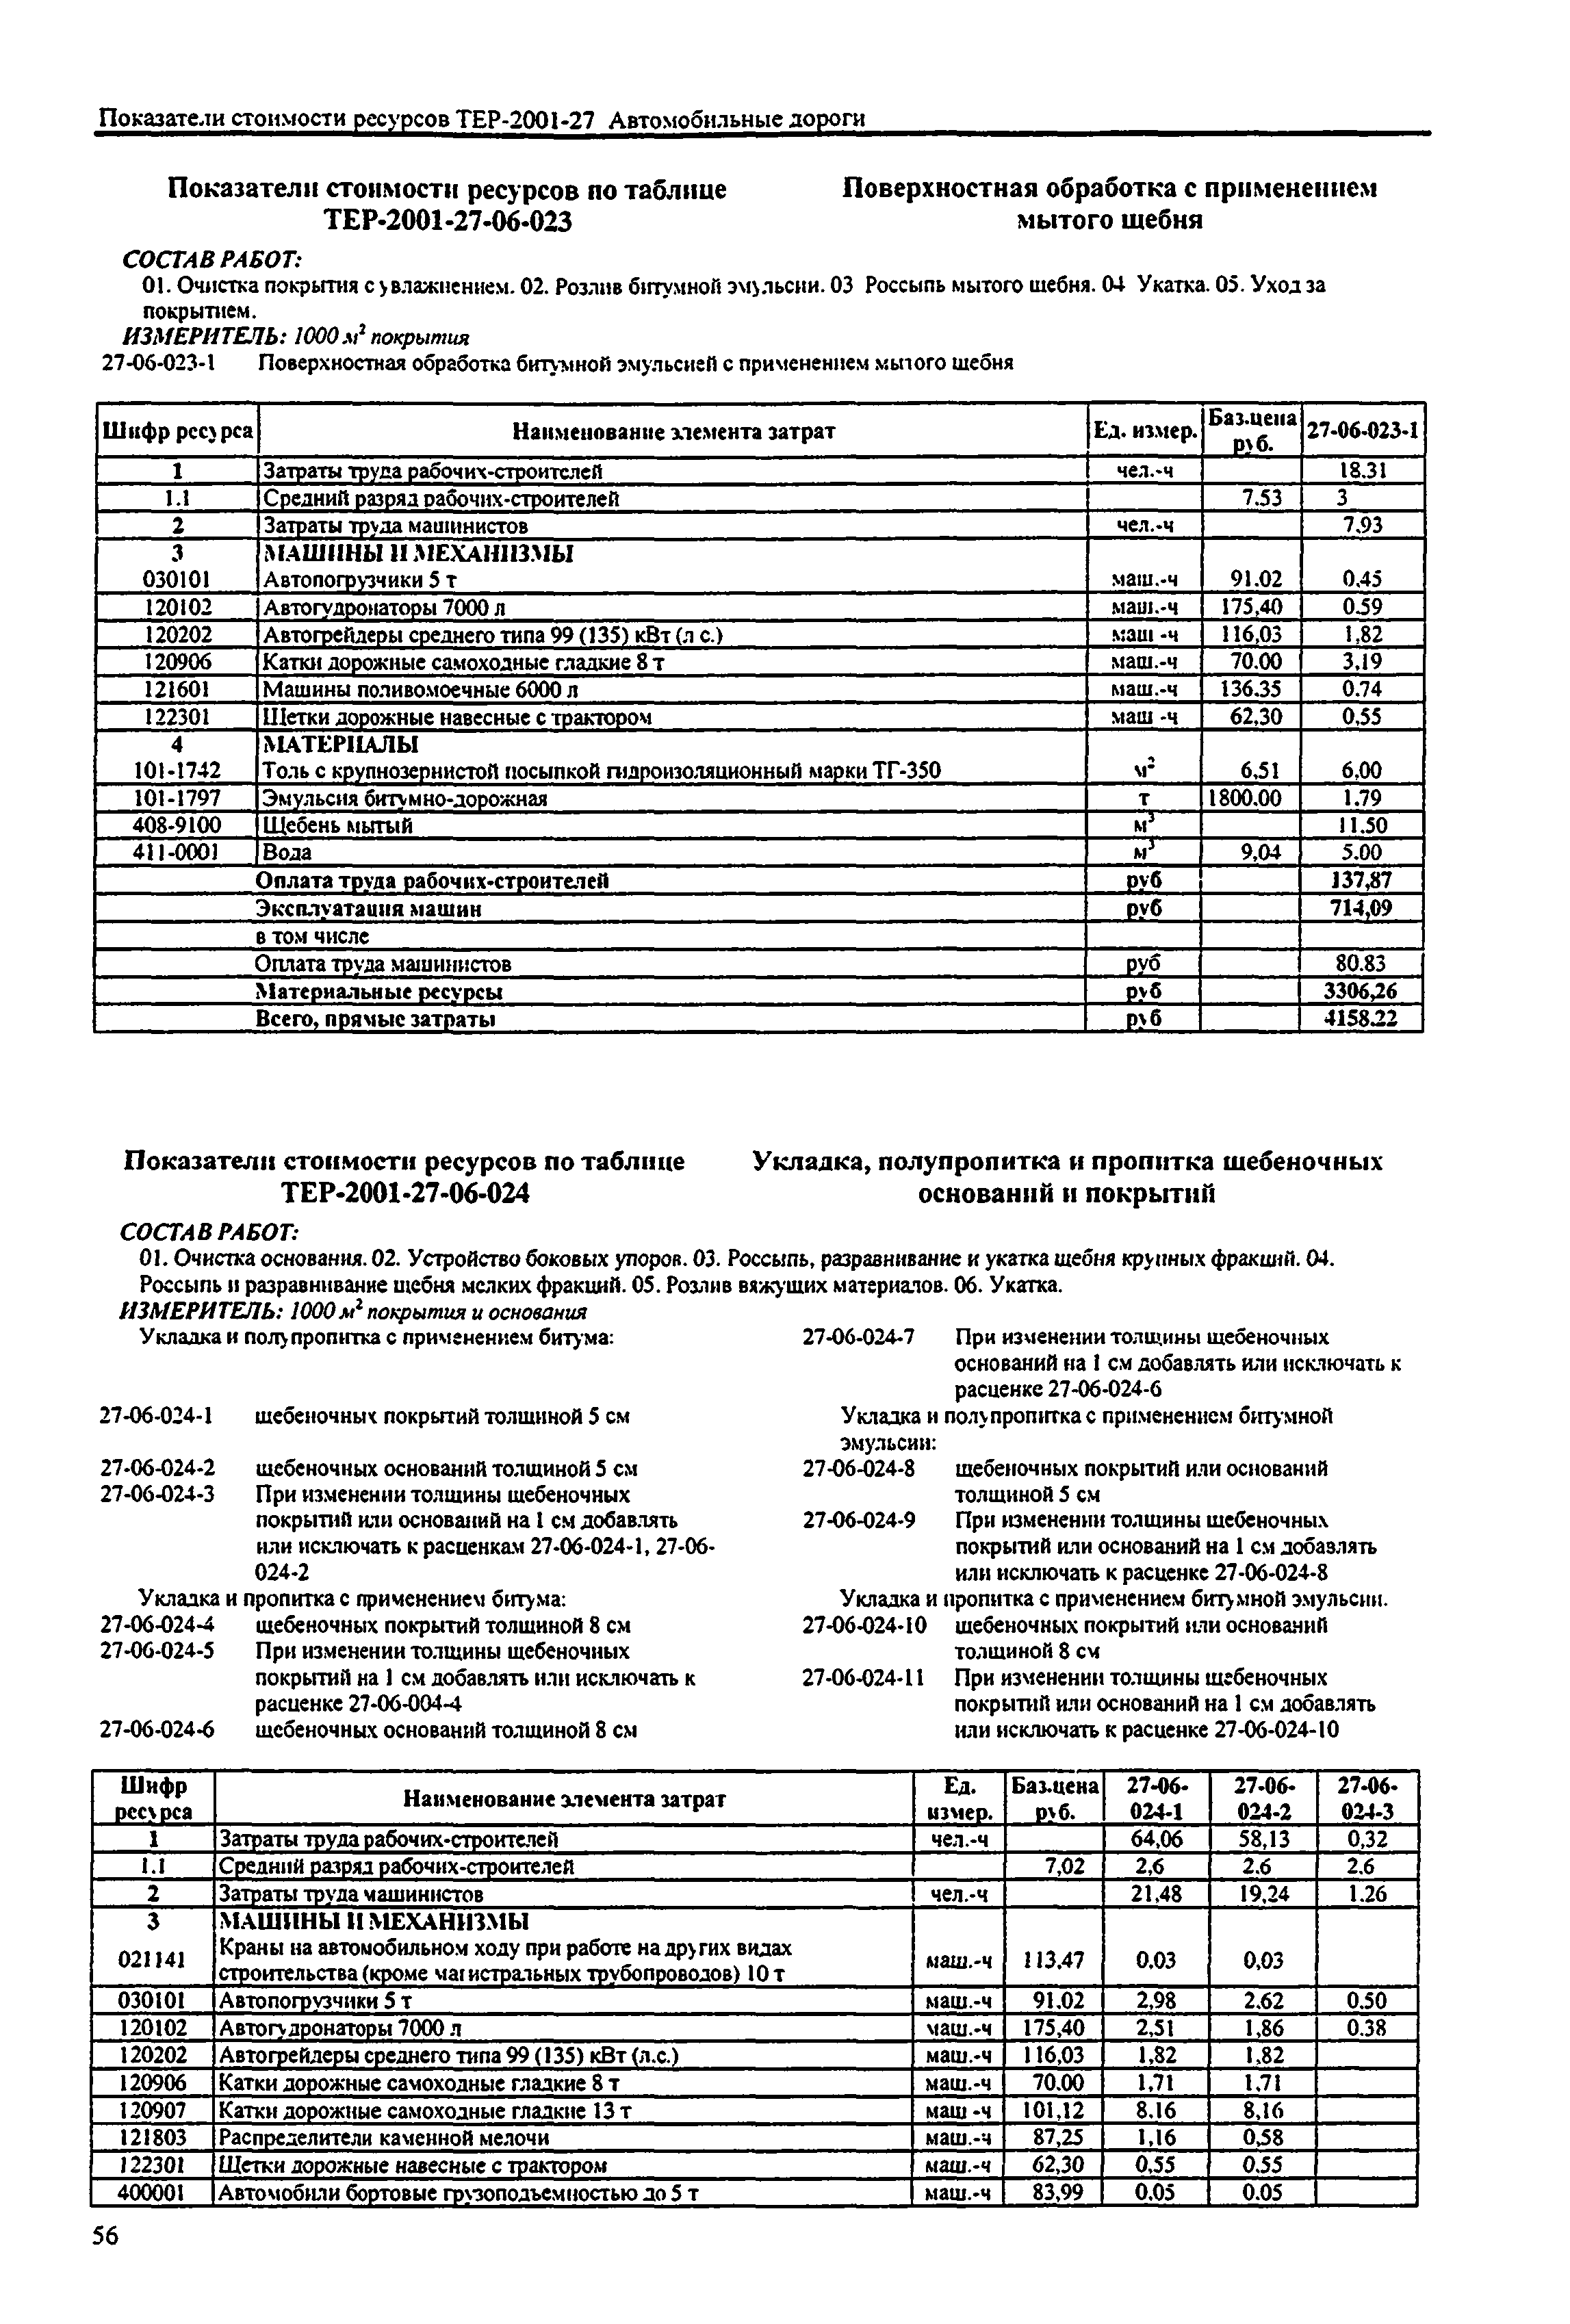 Справочное пособие к ТЕР 81-02-27-2001